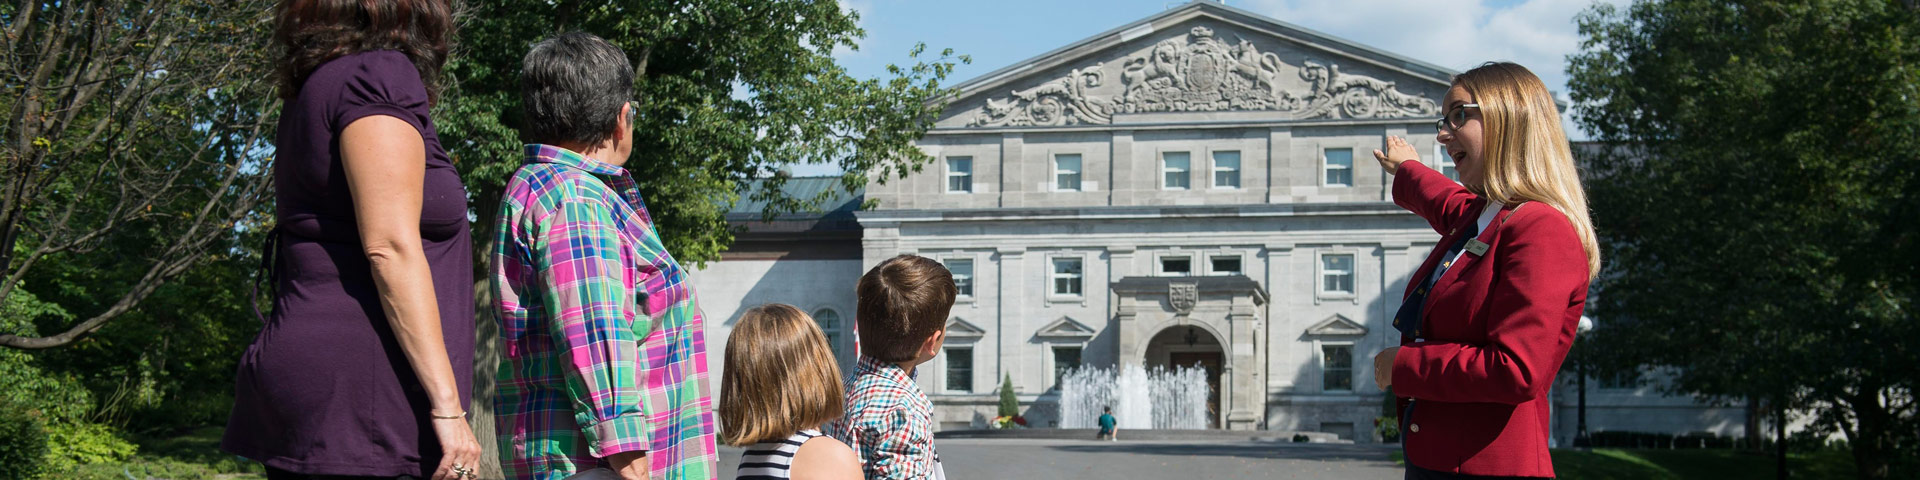 Une guide-interprète montrant la façade de la résidence de Rideau Hall (et une fontaine)  à un petit groupe de visiteurs.